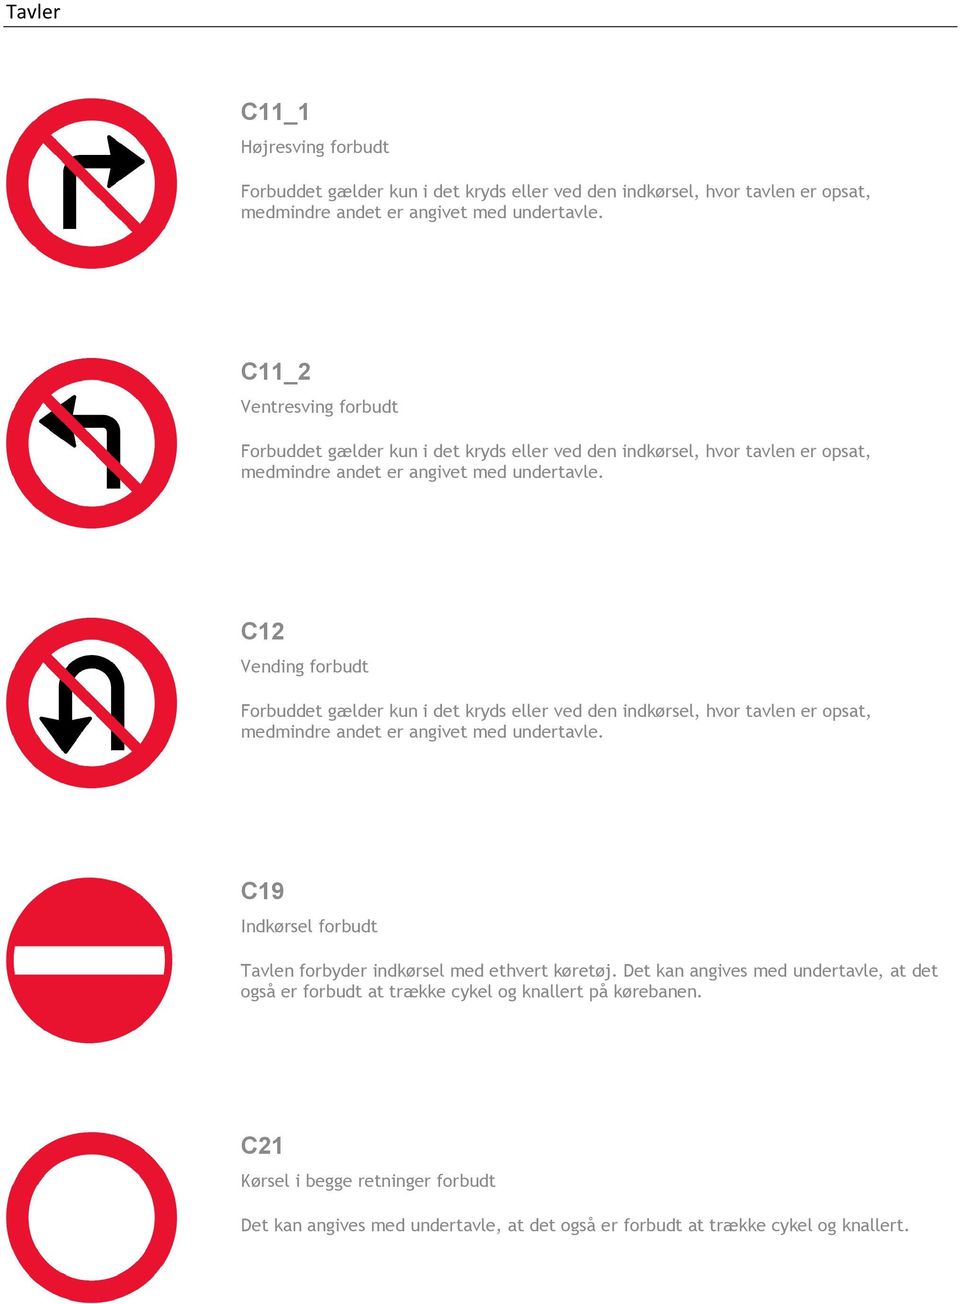 C12 Vending forbudt Forbuddet gælder kun i det kryds eller ved den indkørsel, hvor tavlen er opsat, medmindre andet er angivet med undertavle.